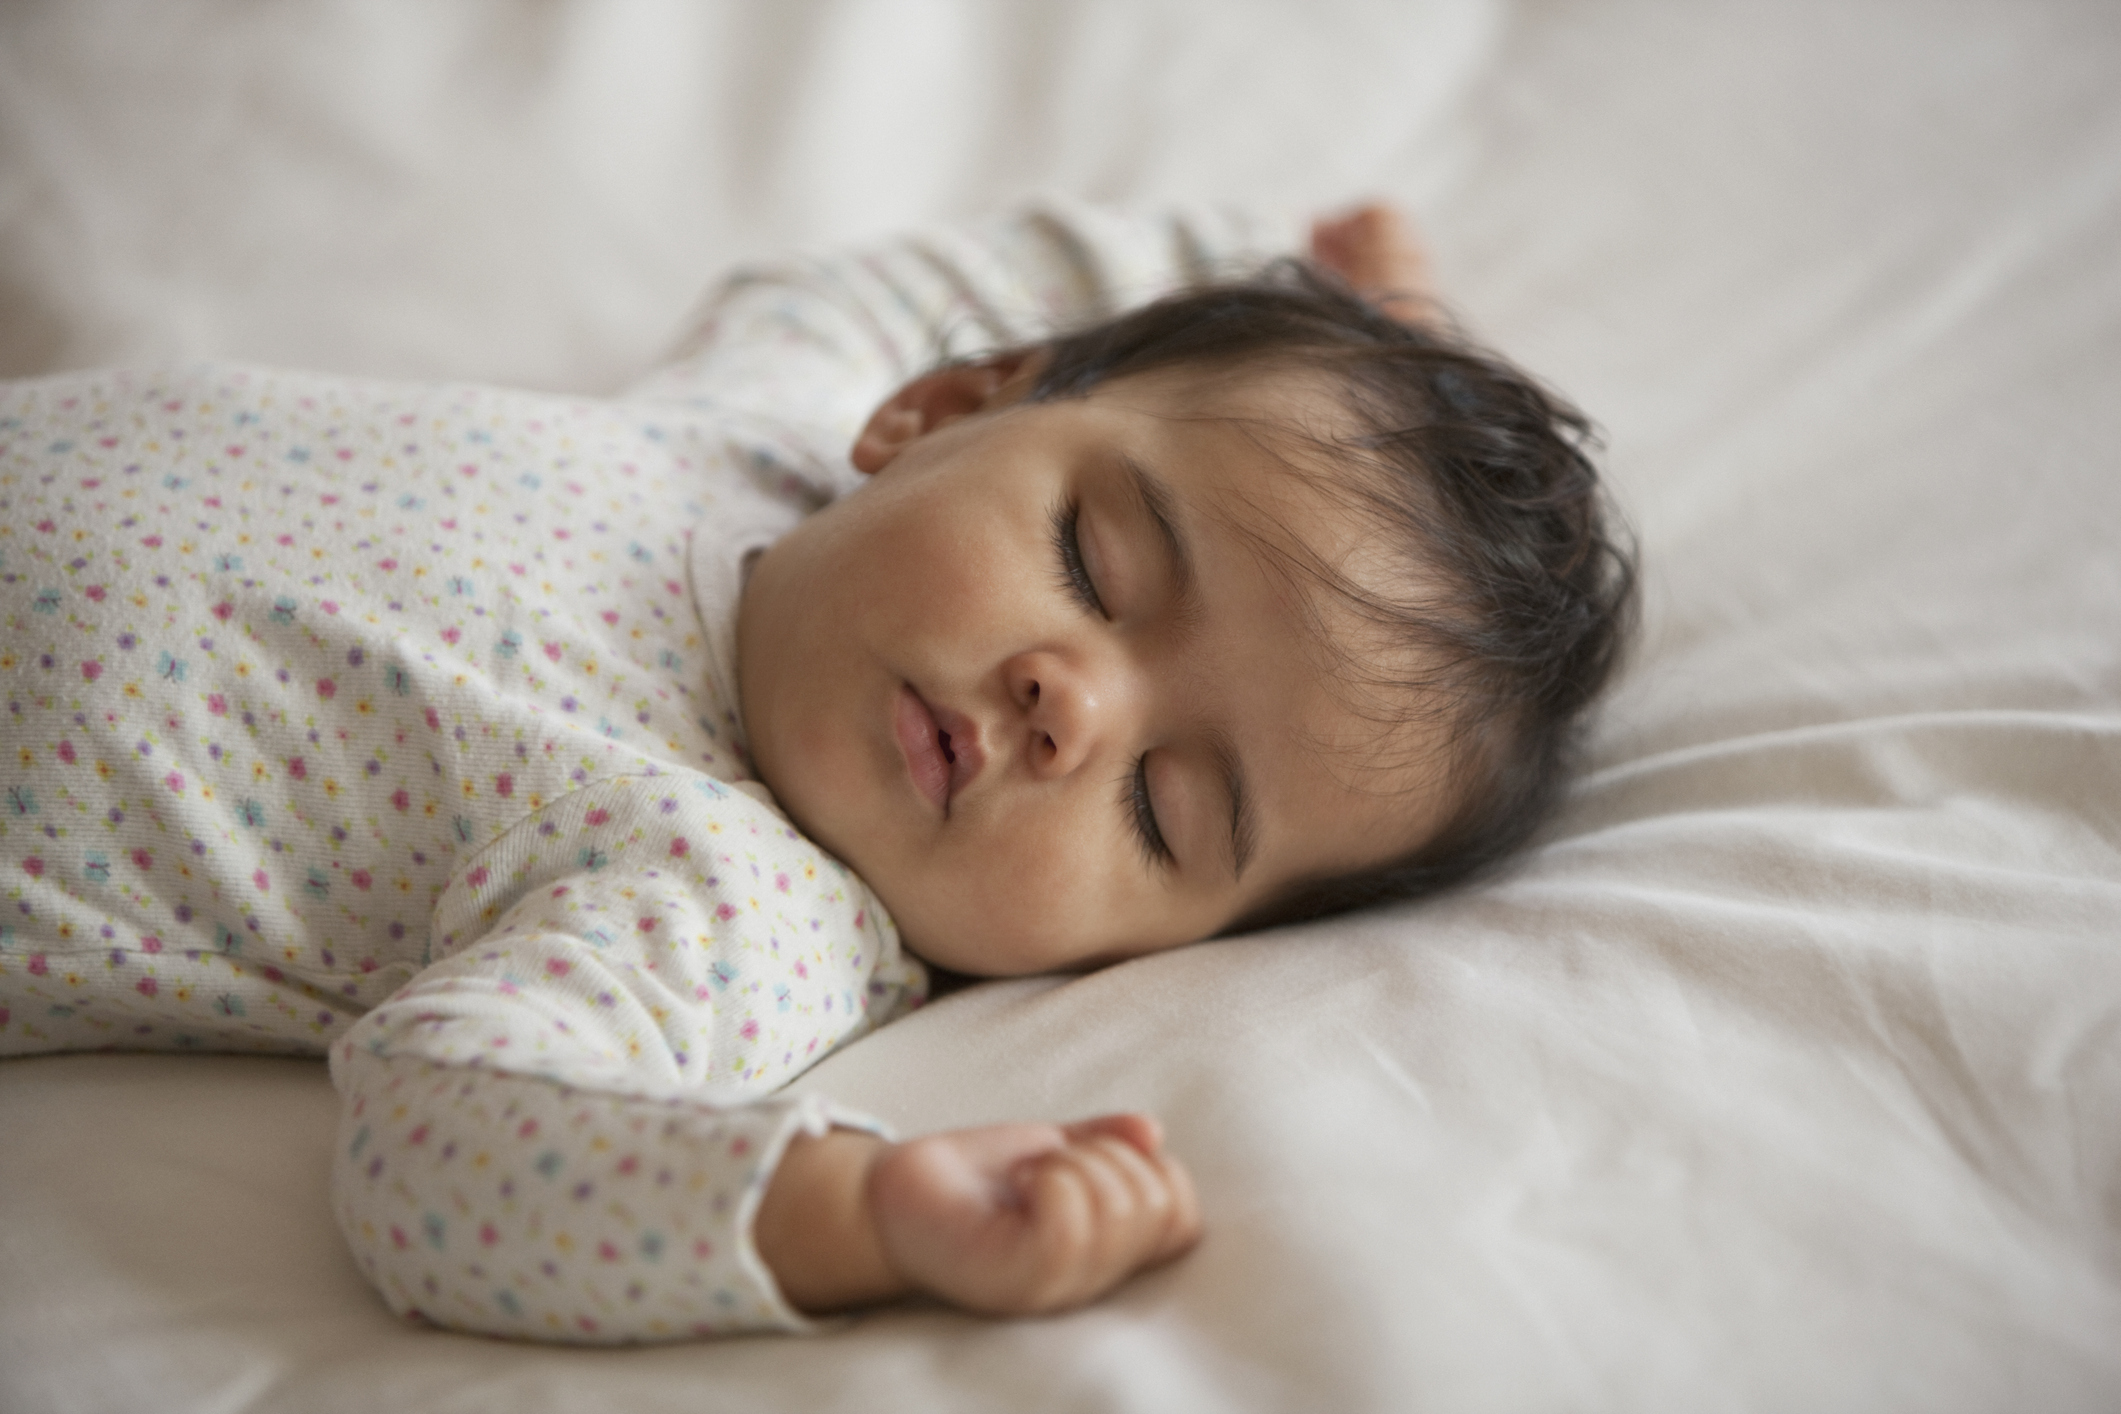 Bebê vestido de branco, pele clara, cabelo castanho escuro, dormindo de barriga para cima com os bracinhos abertos sobre colchão com lençol branco.